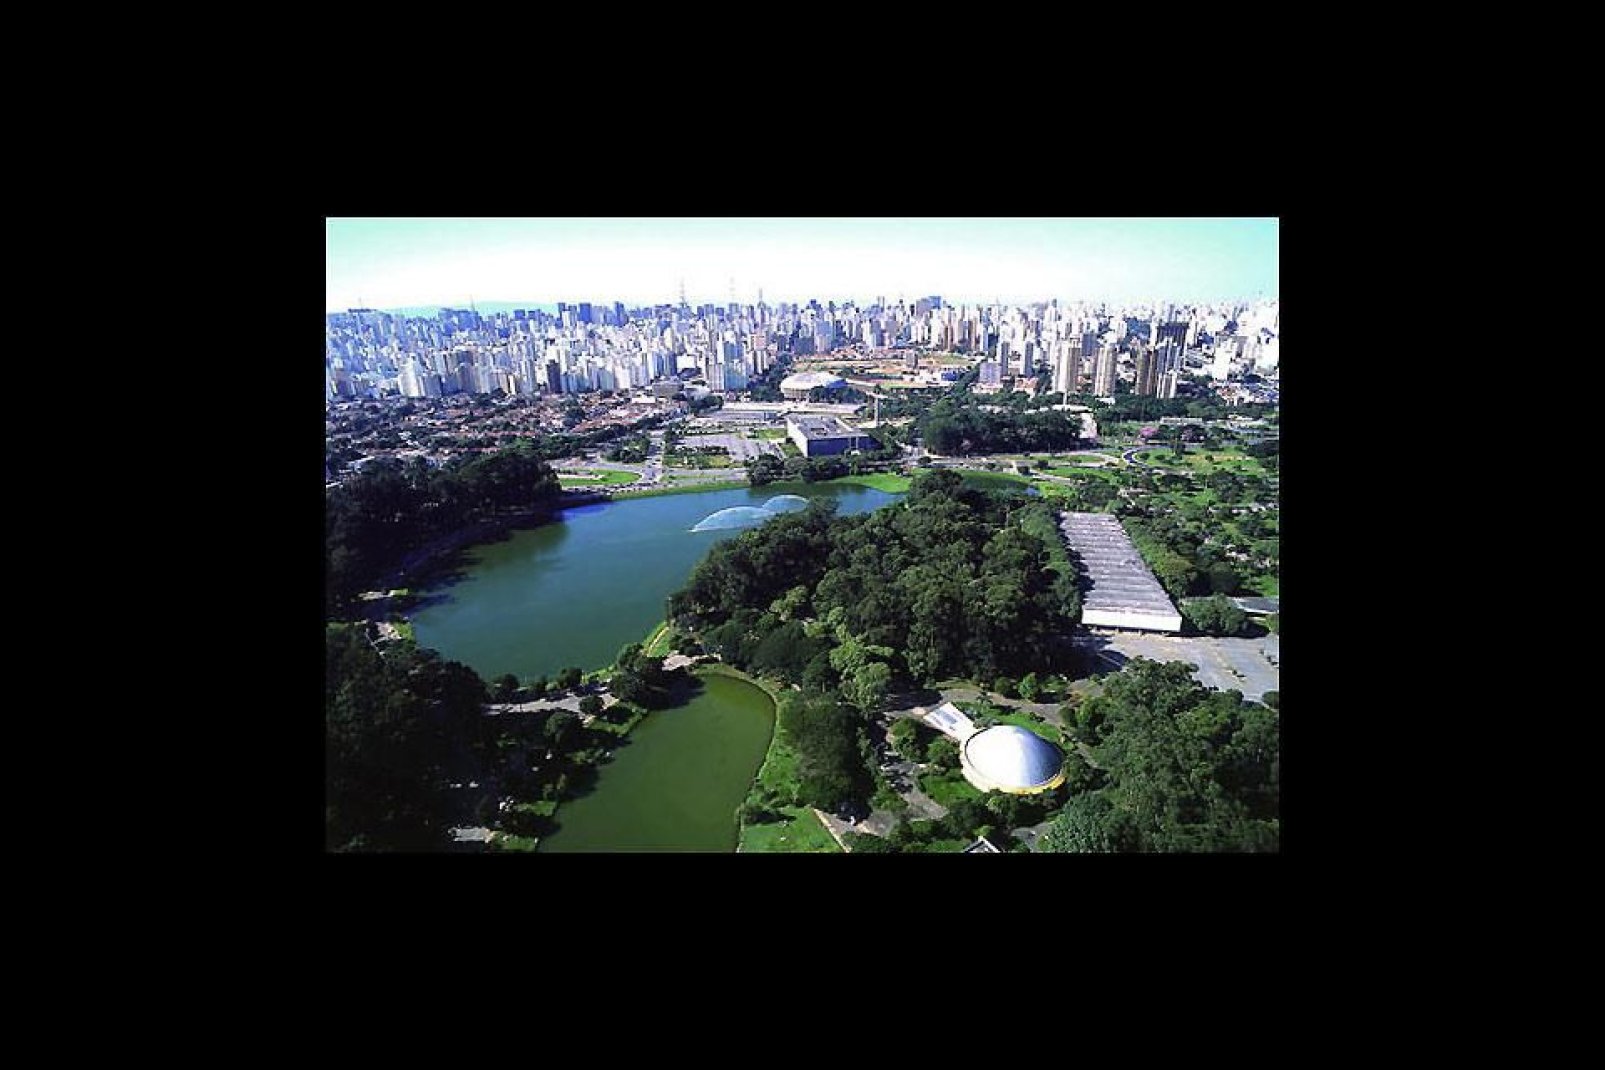 Der größte, öffentliche Park der Stadt umfasst 1,5 Millionen Quadratmeter an Grünflächen.